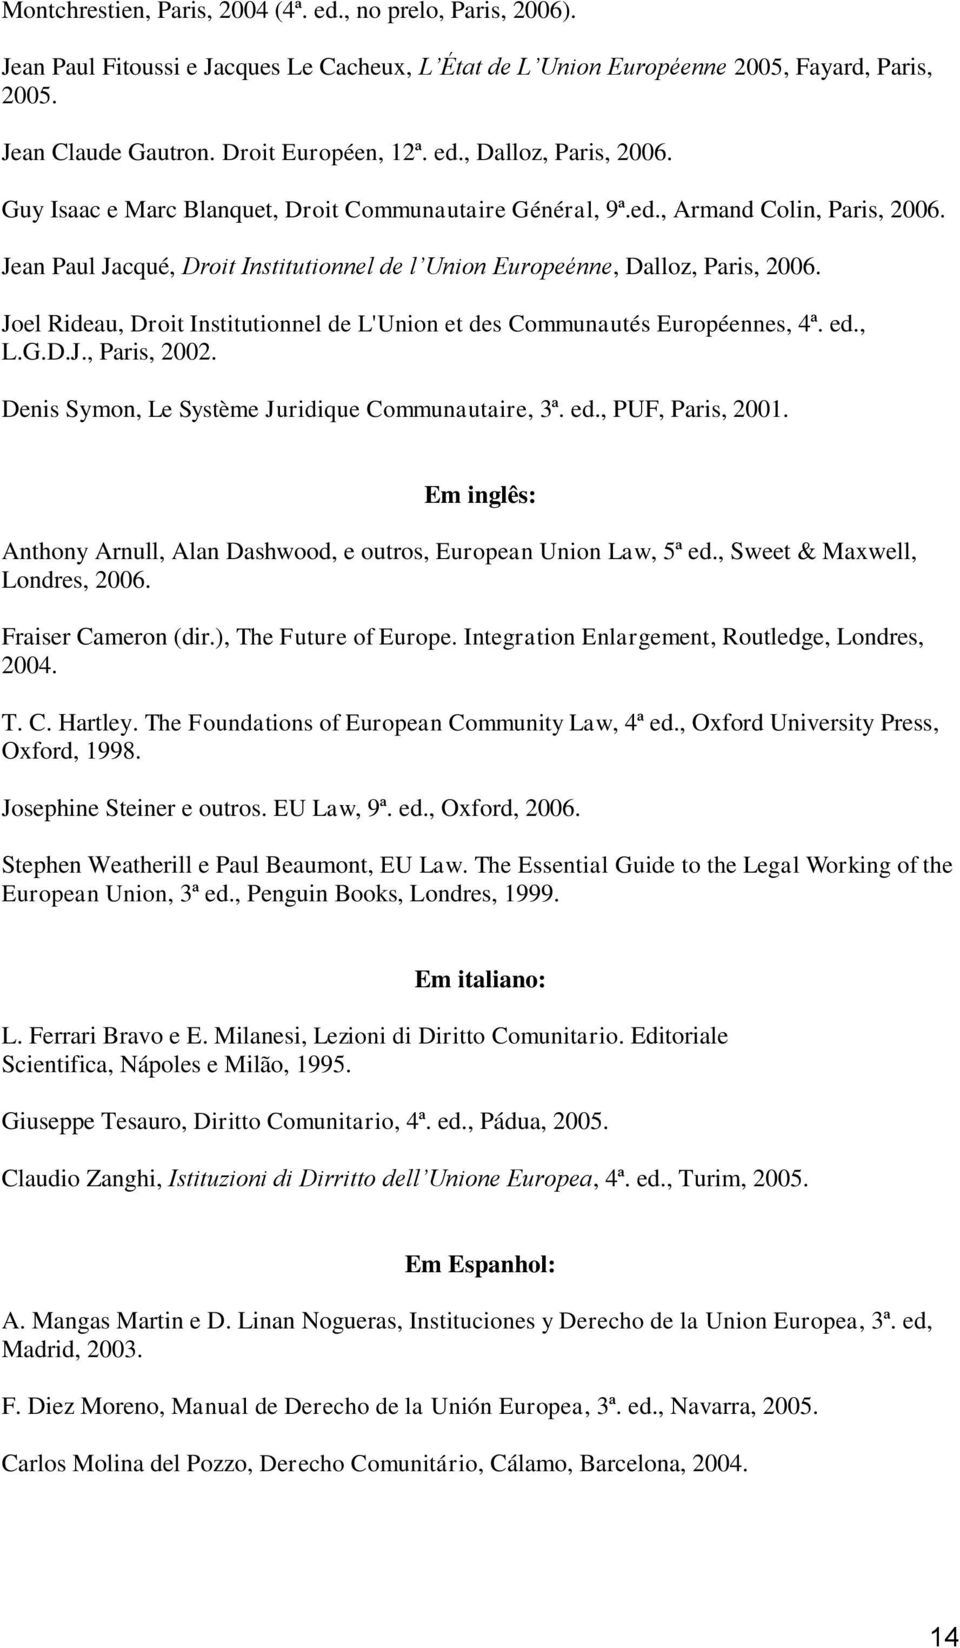 Joel Rideau, Droit Institutionnel de L'Union et des Communautés Européennes, 4ª. ed., L.G.D.J., Paris, 2002. Denis Symon, Le Système Juridique Communautaire, 3ª. ed., PUF, Paris, 2001.